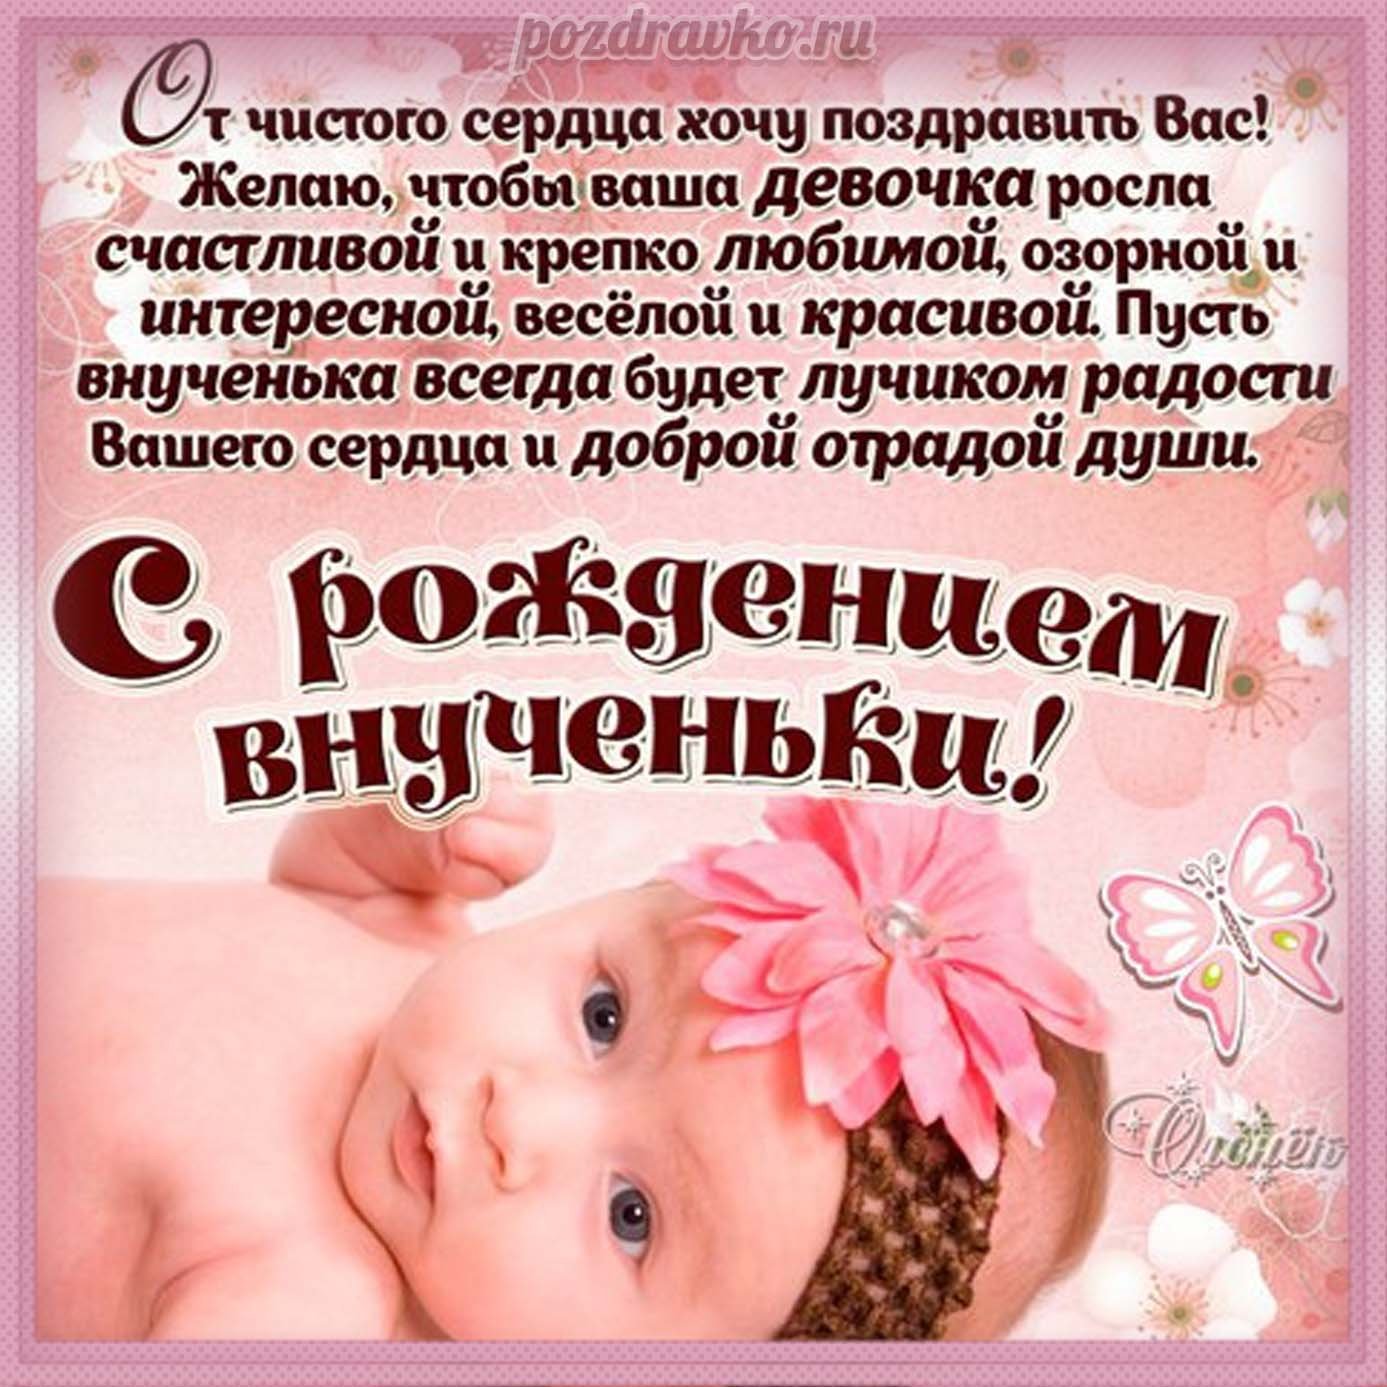 поздравление с рождением внучки на крымскотатарском языке